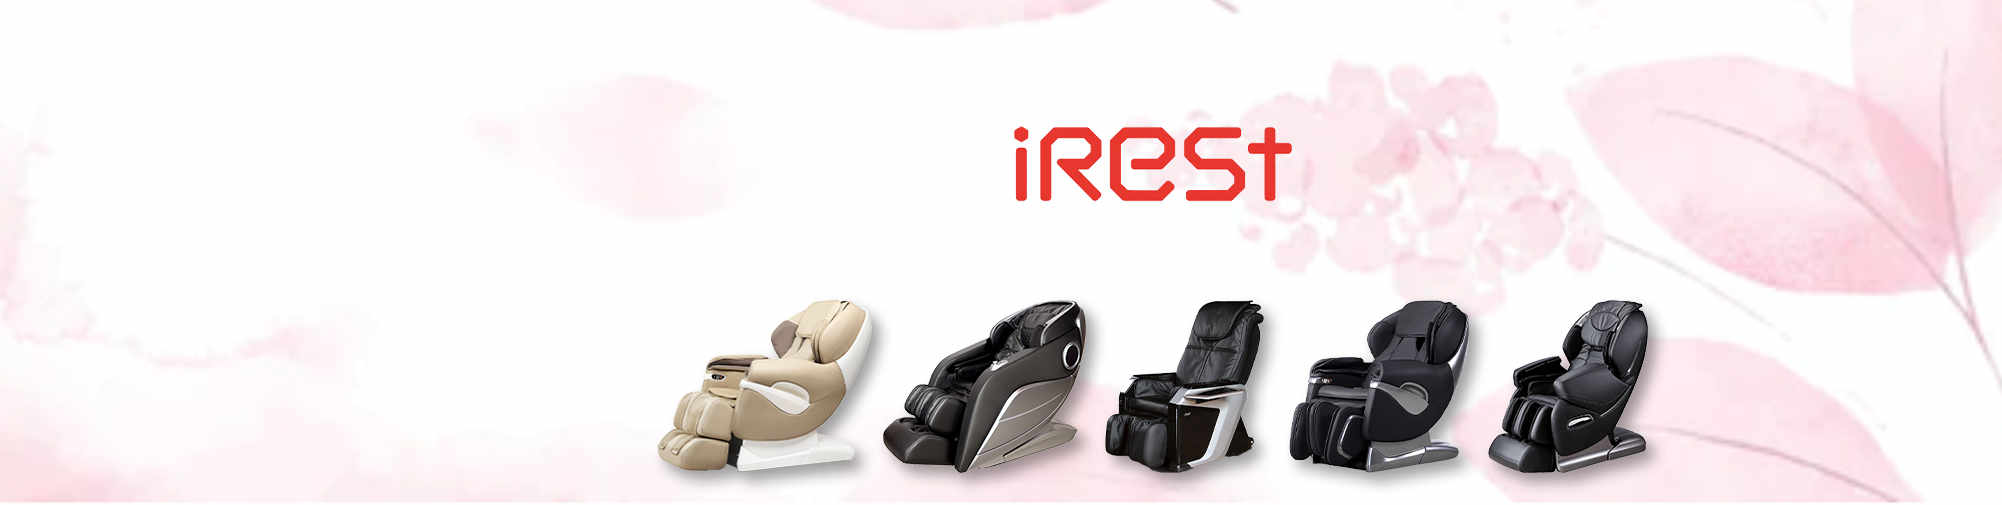 iRest - मालिश कुर्सी बाजार के लिए ताजी हवा की सांस | मालिश कुर्सी की दुनिया